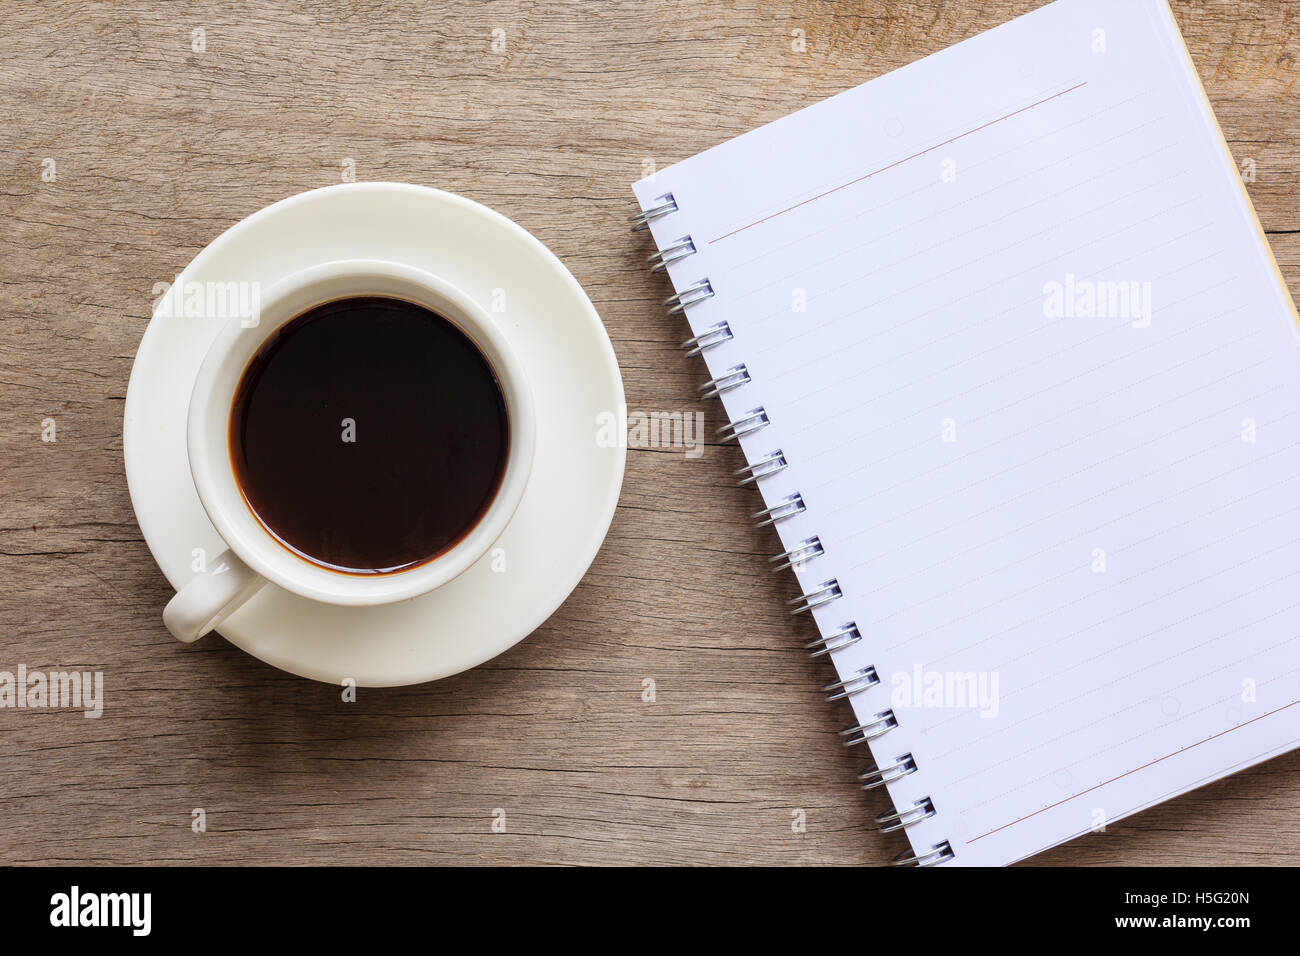 Vista superiore e la chiusura del desktop di legno con notebook e la tazza di caffè. Foto Stock